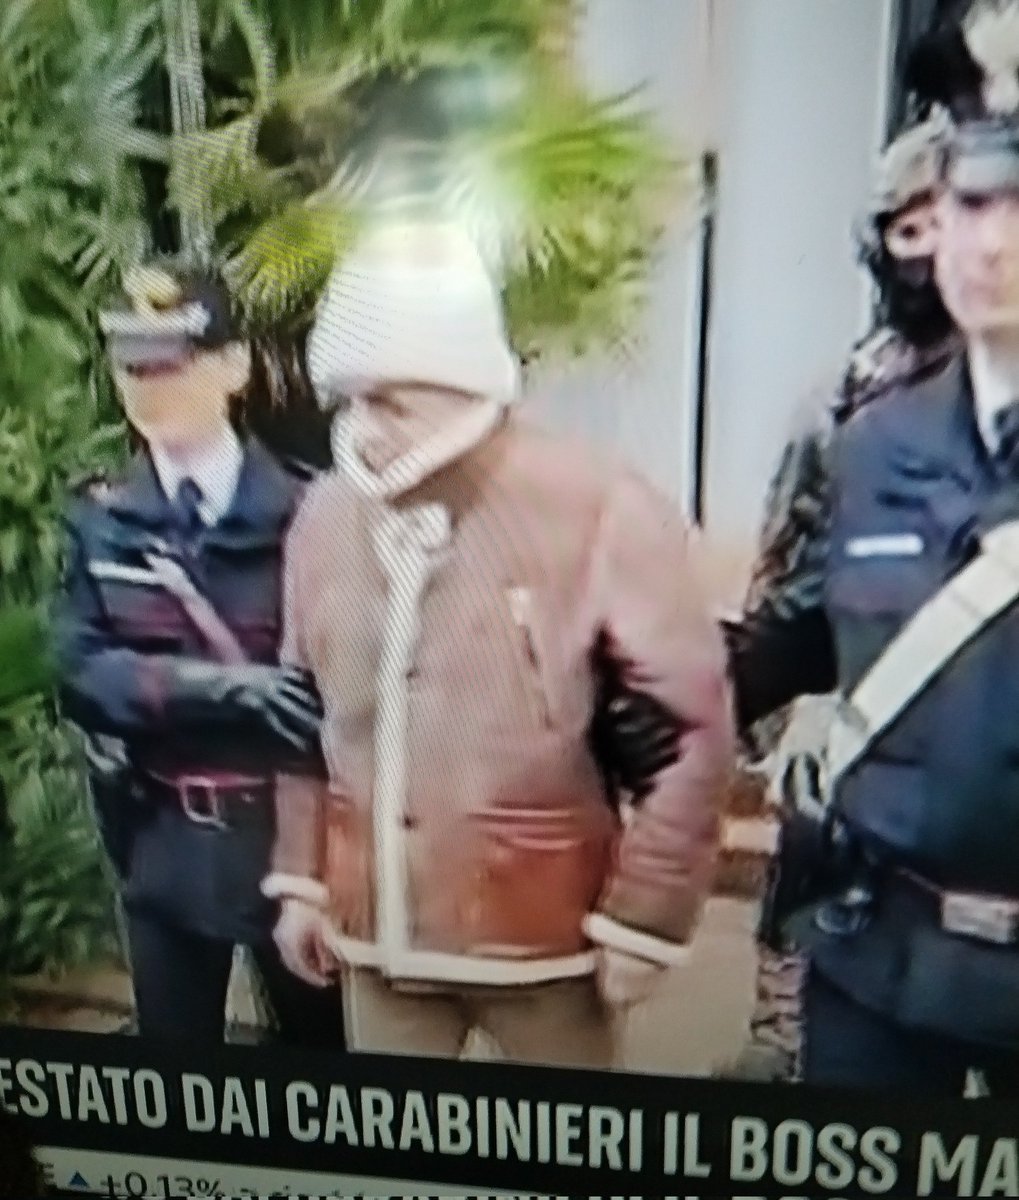 Arrestato senza manette #MattiaMessinaDenaro  all'ospedale oncologico di #Palermo: era da 30 anni a casa sua a #Castelvetrano 
Fate voi! #StatoMafia